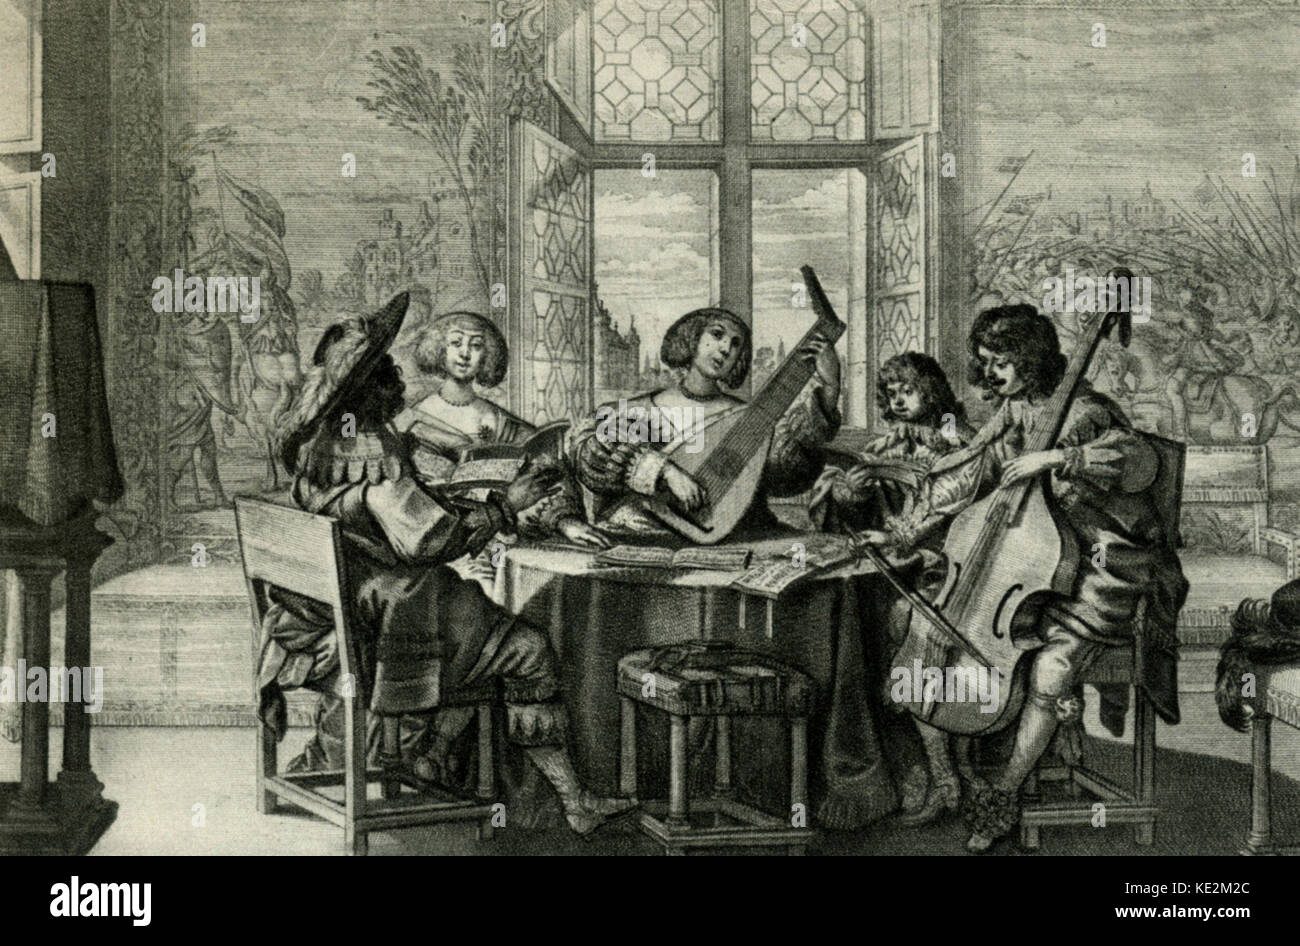 'Hören' - kupferstich von A. Bosse (1602-1676). Musiker runden Tisch singen von partbooks, Viola da Gamba und Laute begleitet. Zeigt die Anhörung als einer der 5 Sinne. Konzert. Consort Musik. Frühbarock. Allegorie. Stockfoto